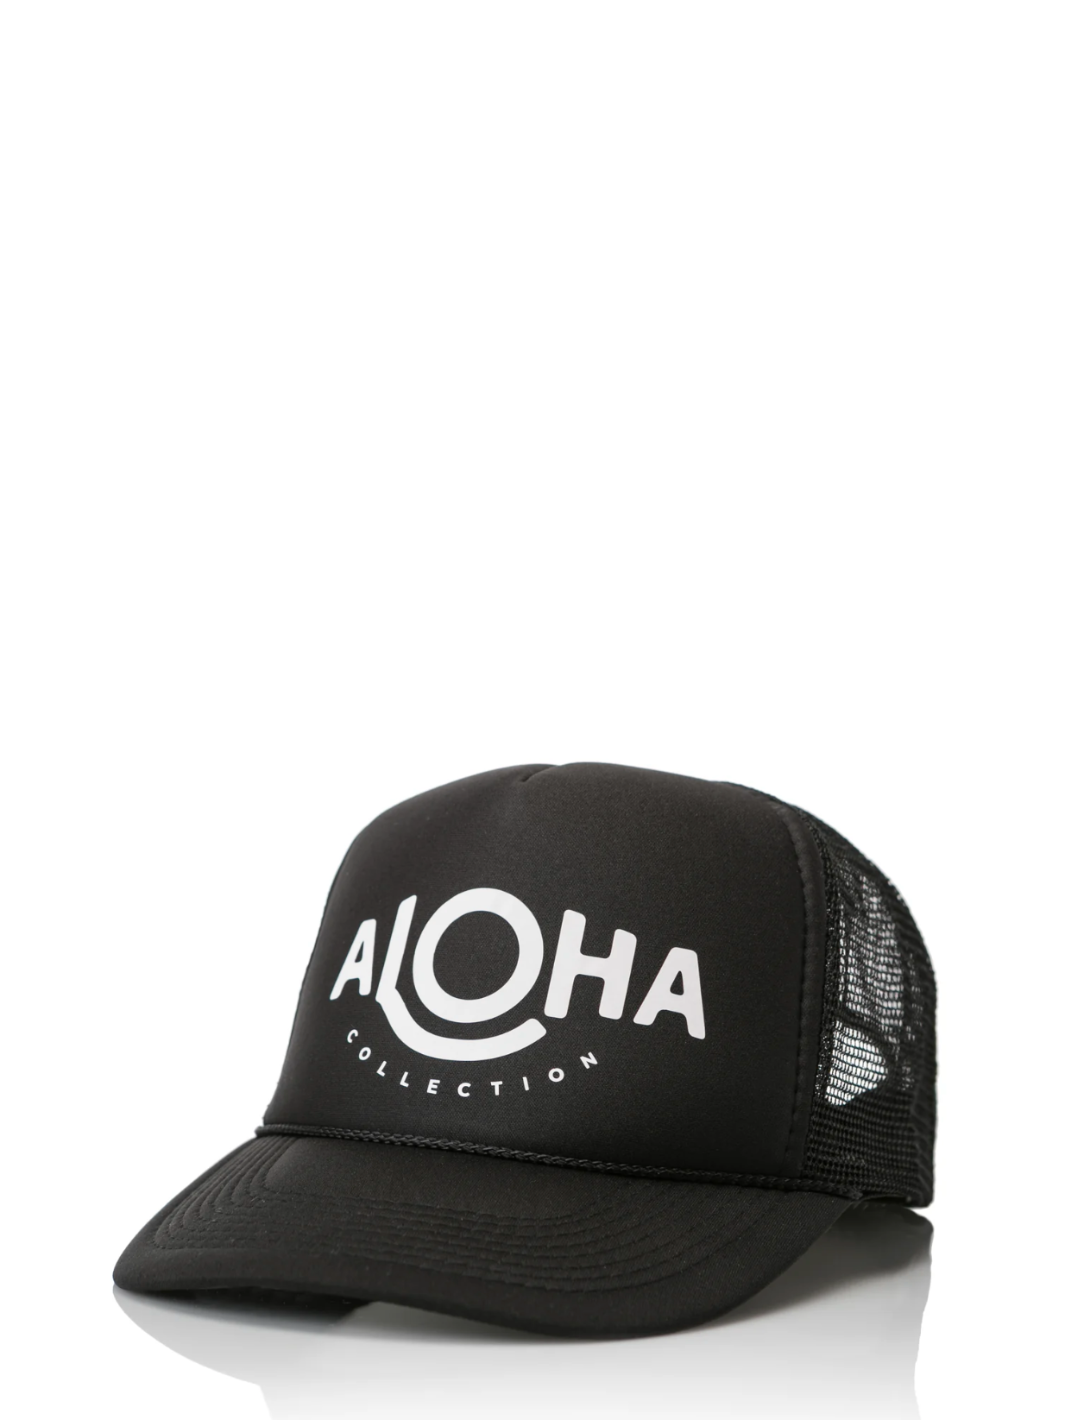 ALOHA TRUCKER HAT IN BLACK - Romi Boutique